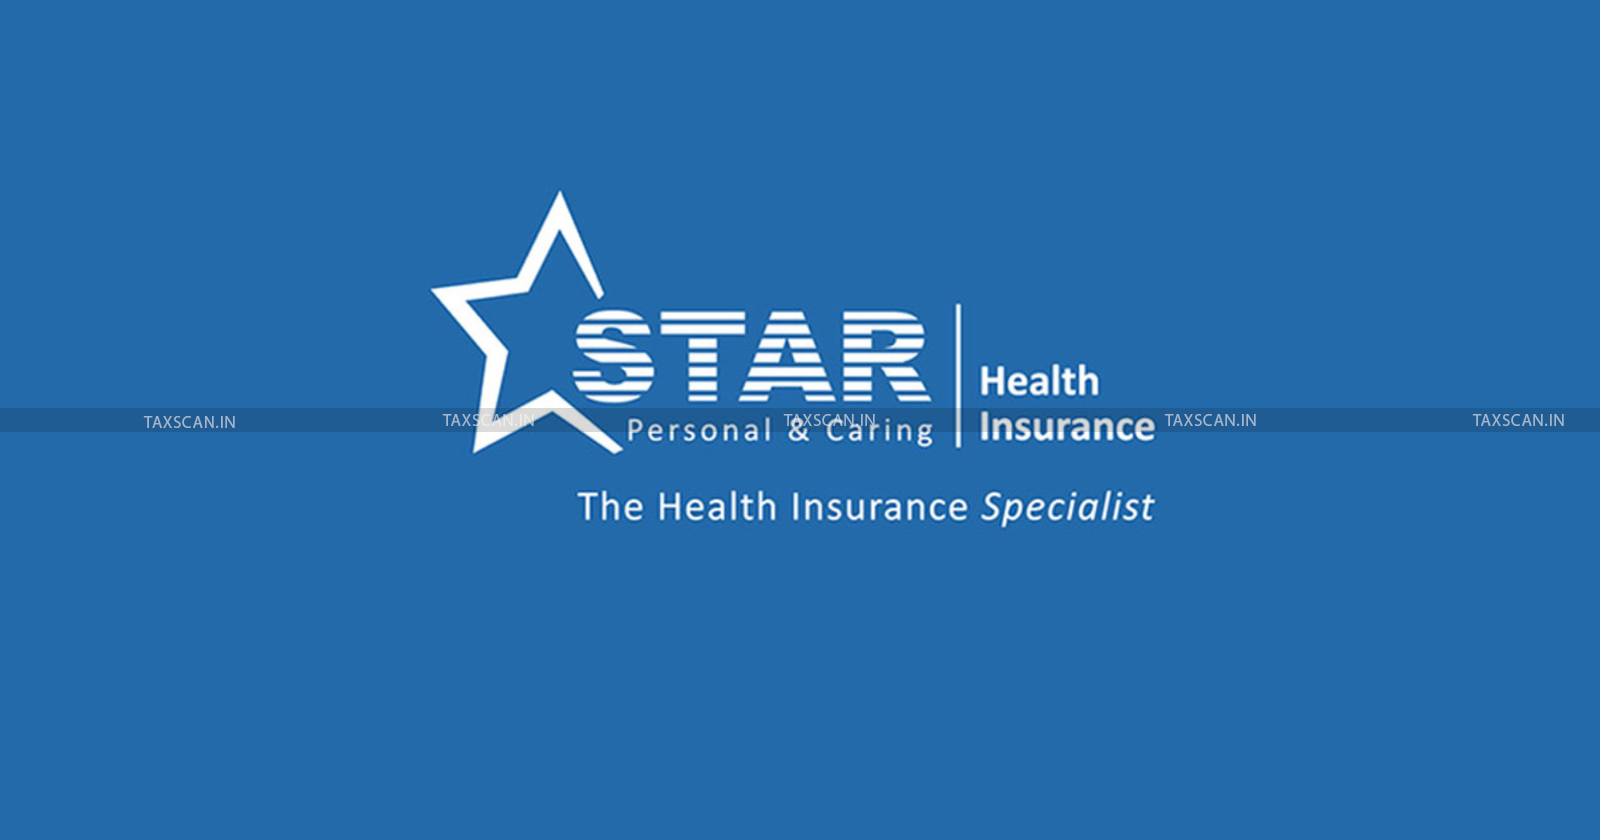 GST - Show Cause Notice - Star Health - Star Health GST Notice - taxscan